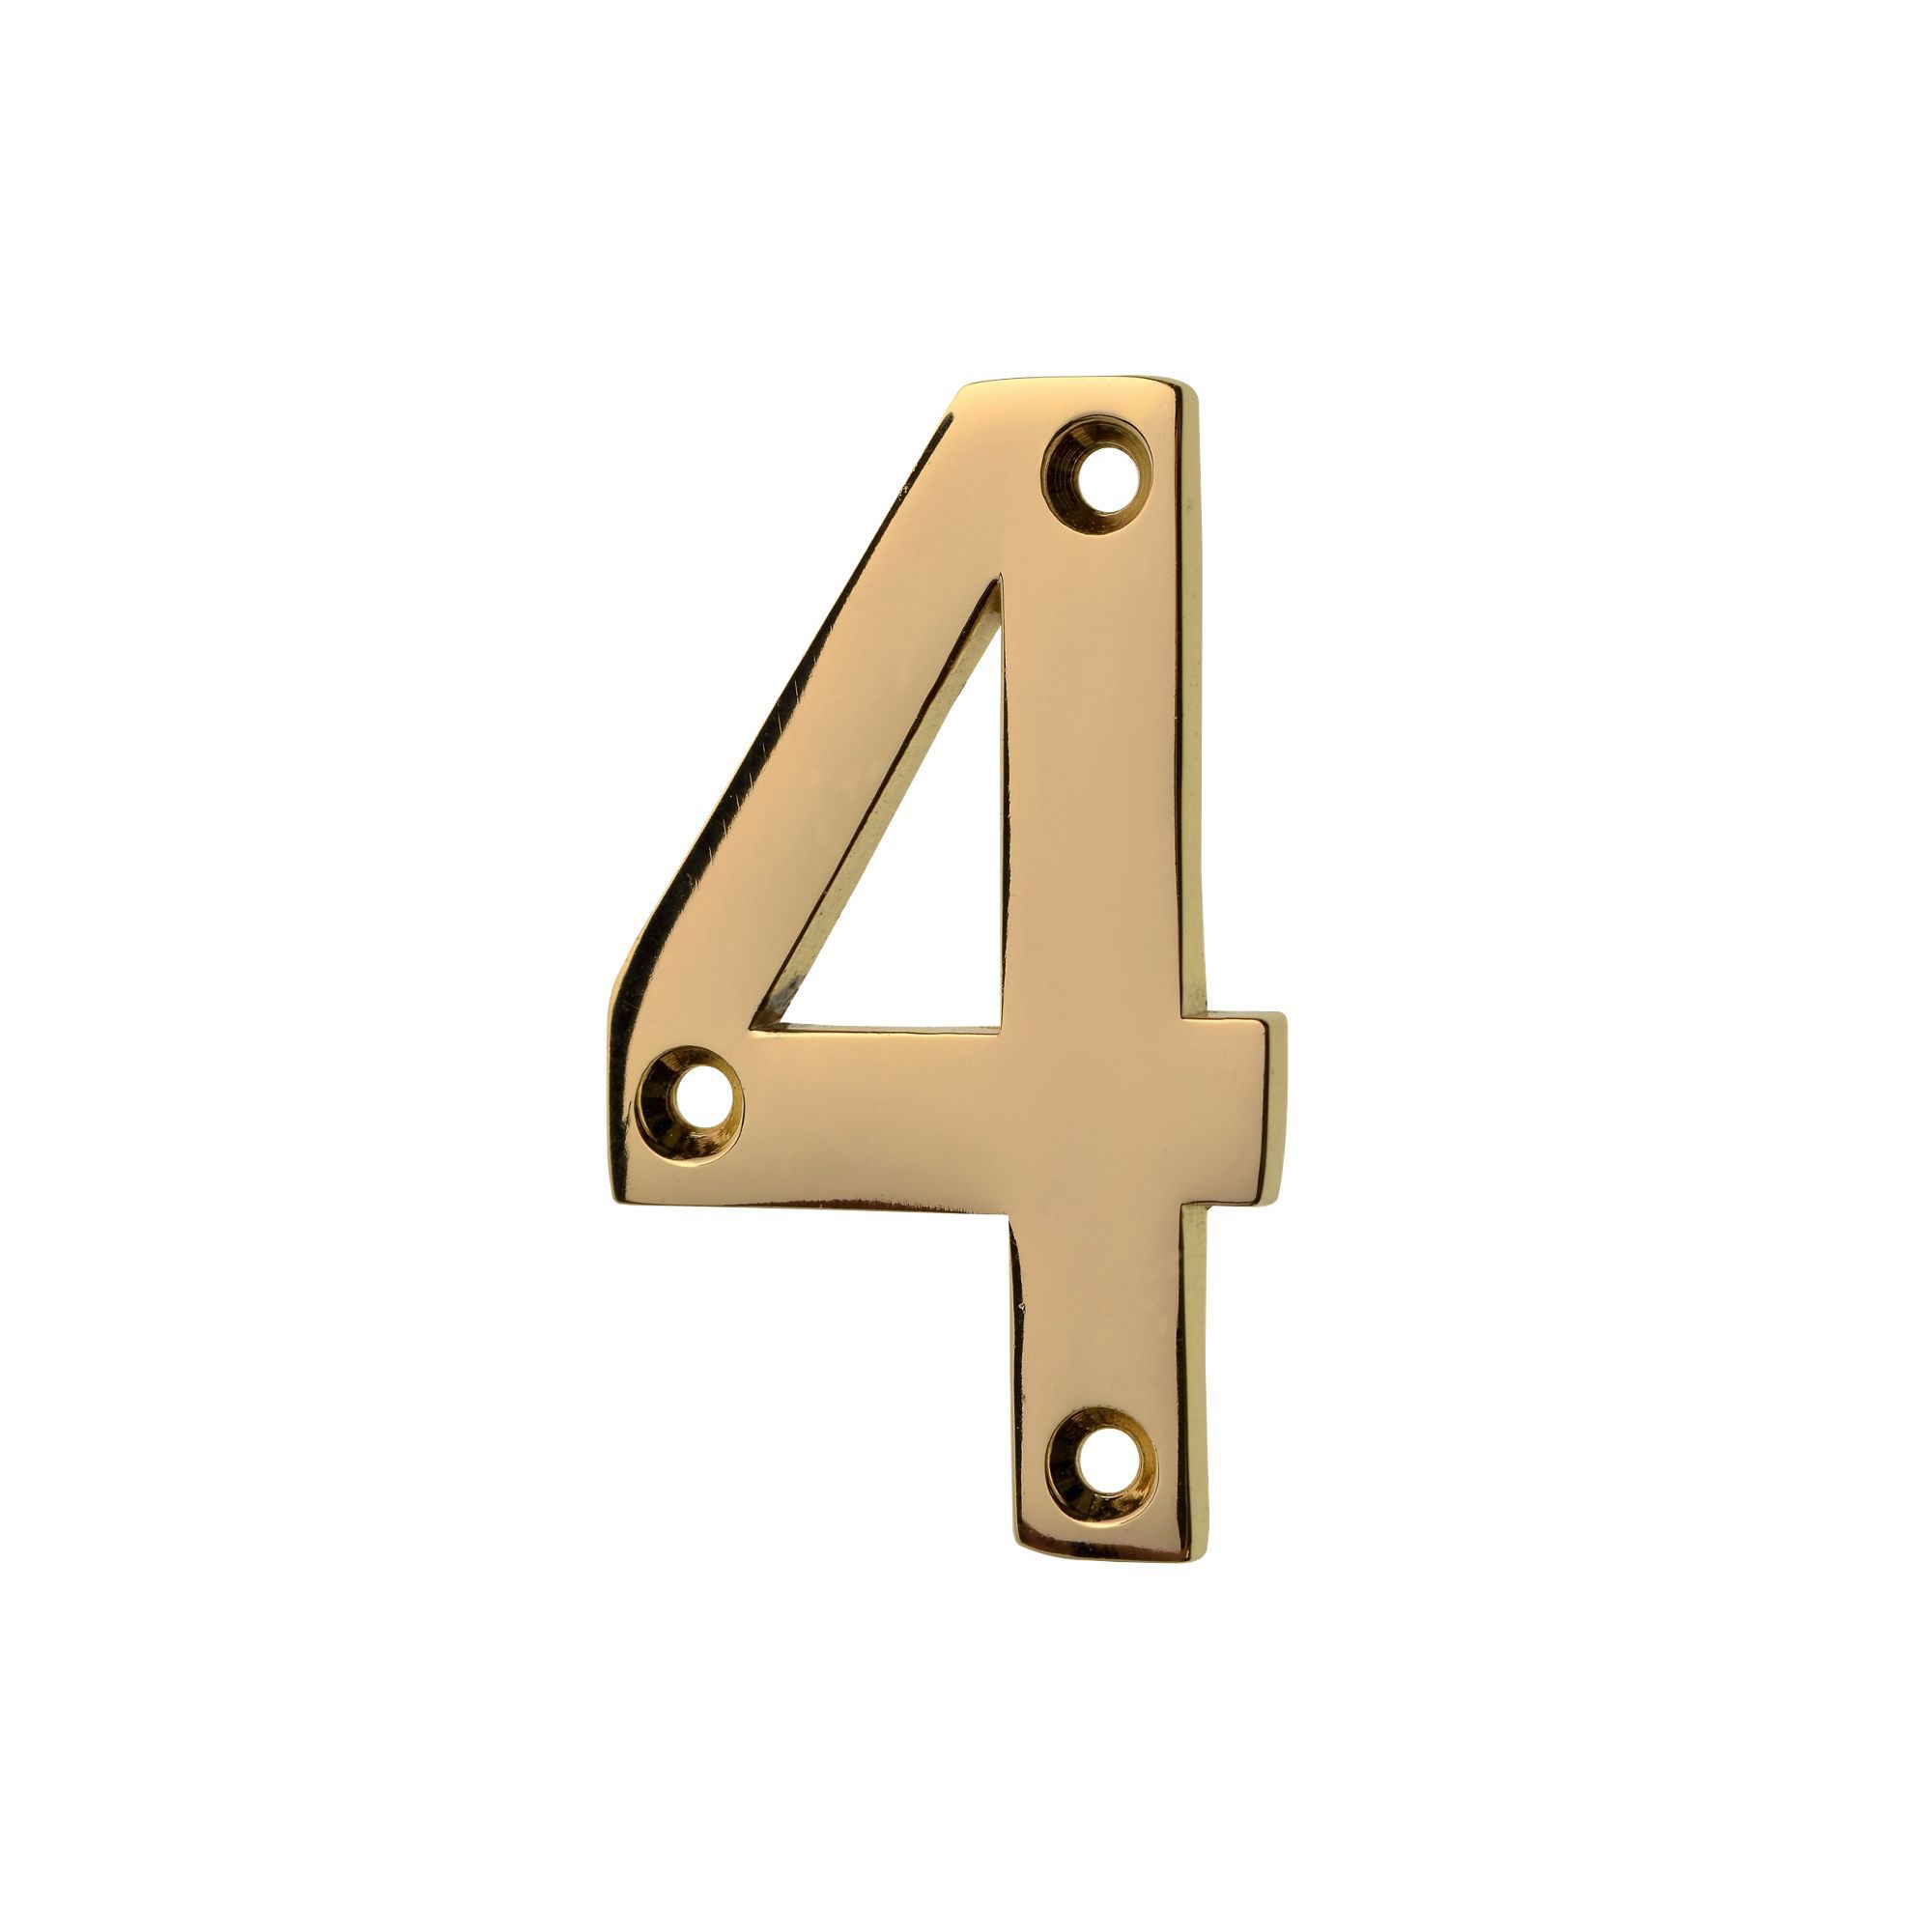 Image of Wickes Door Number 4 - Brass